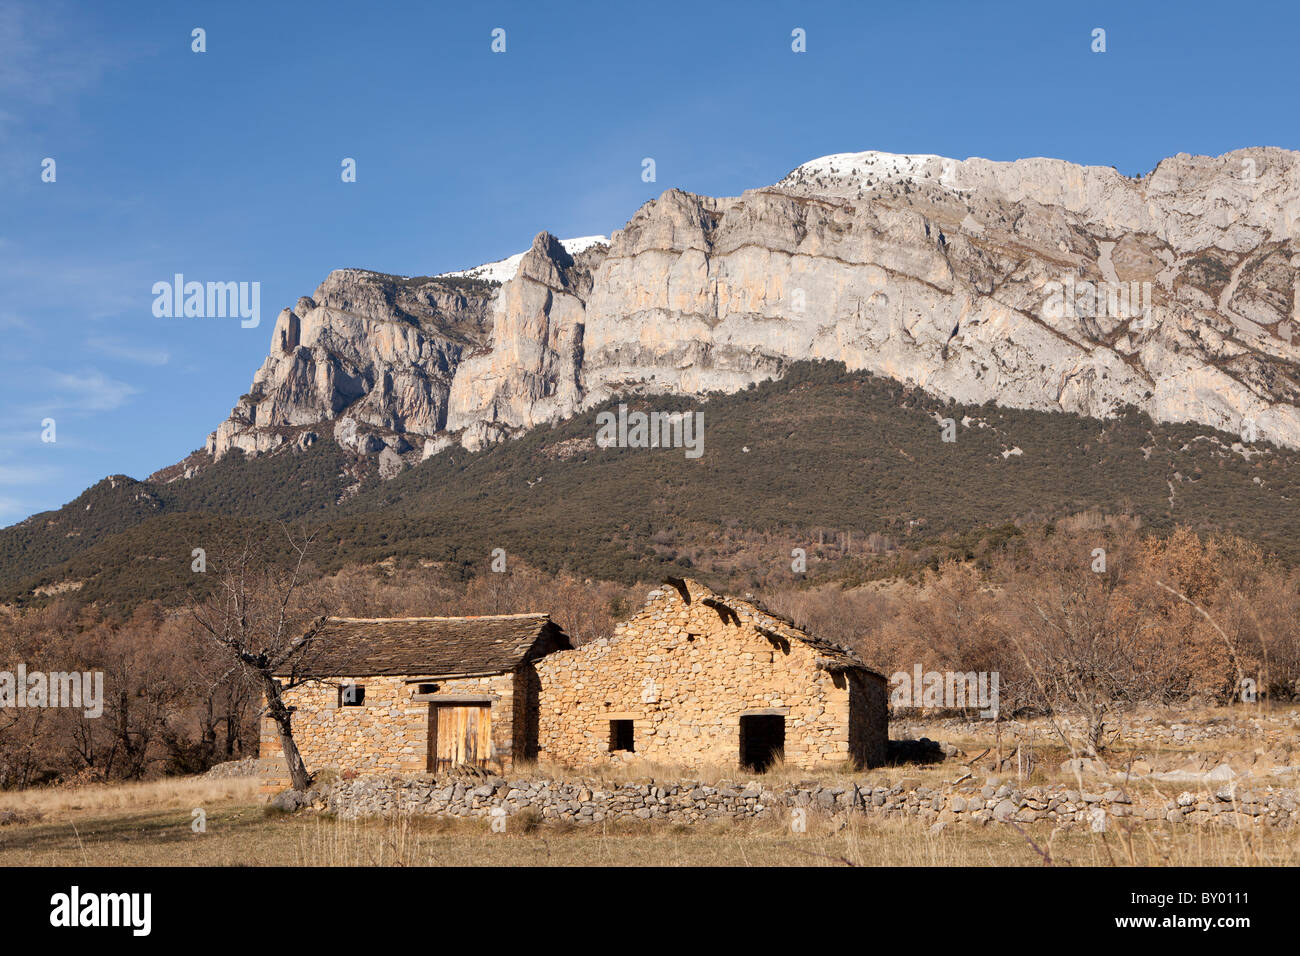 View of Peña Montañesa peak from Fueva Valley, Valley of La Fueva, Huesca, Spain Stock Photo